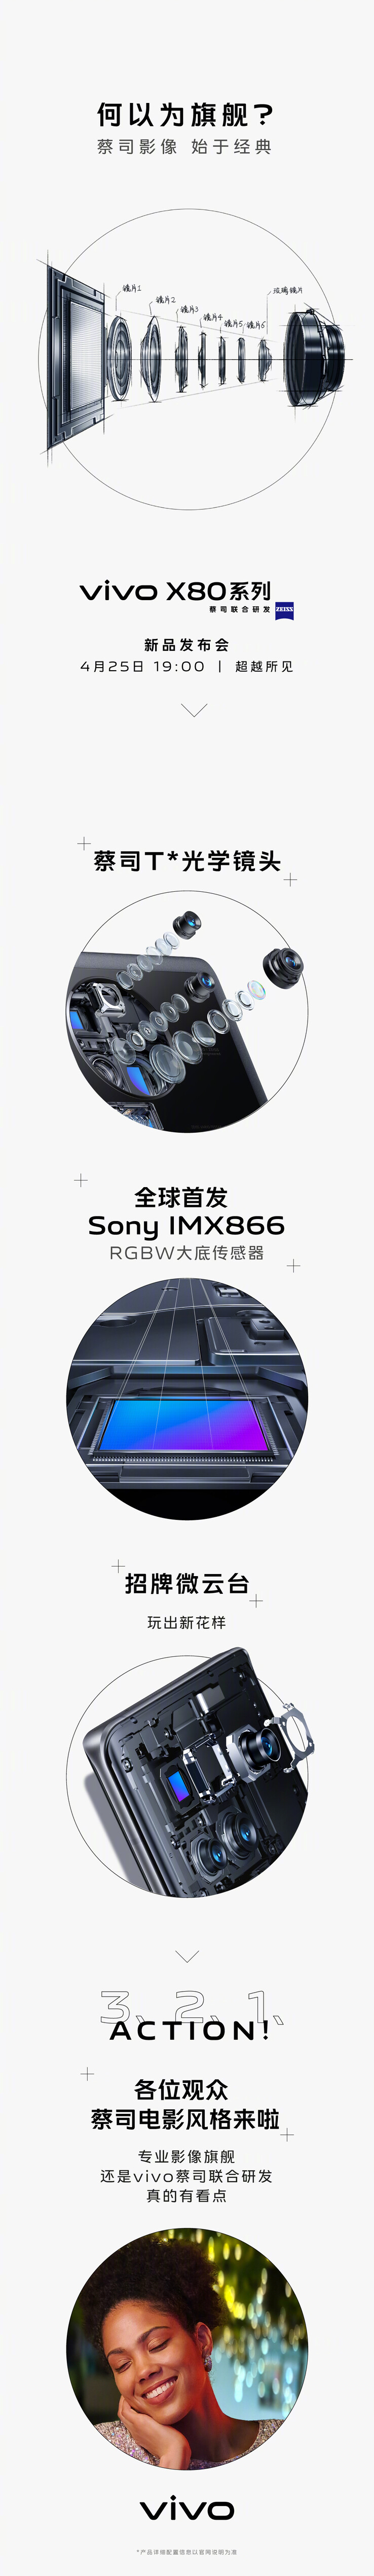 Vivo teases the X80s' new main Sony camera. (Source: Vivo via Weibo)